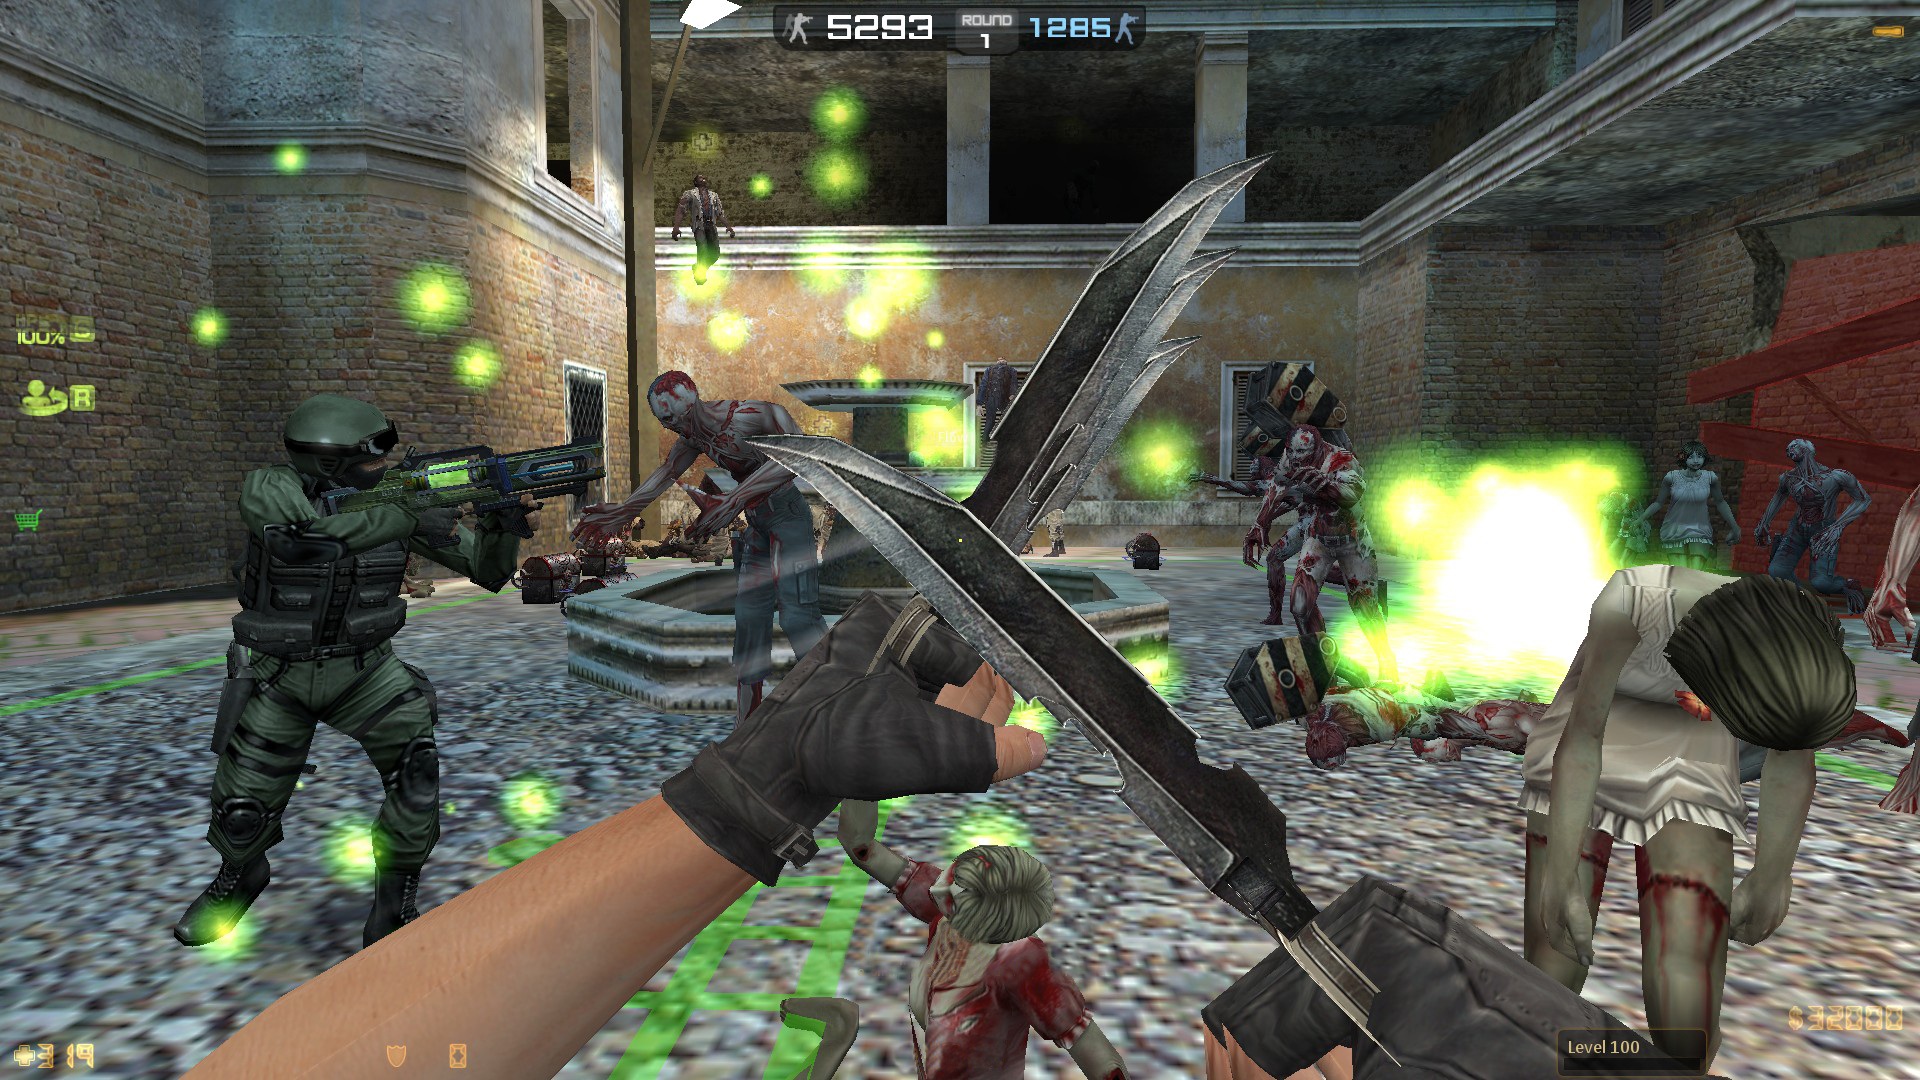 Nexon introduces Studio Mode to Counter-Strike Nexon: Zombies, letting